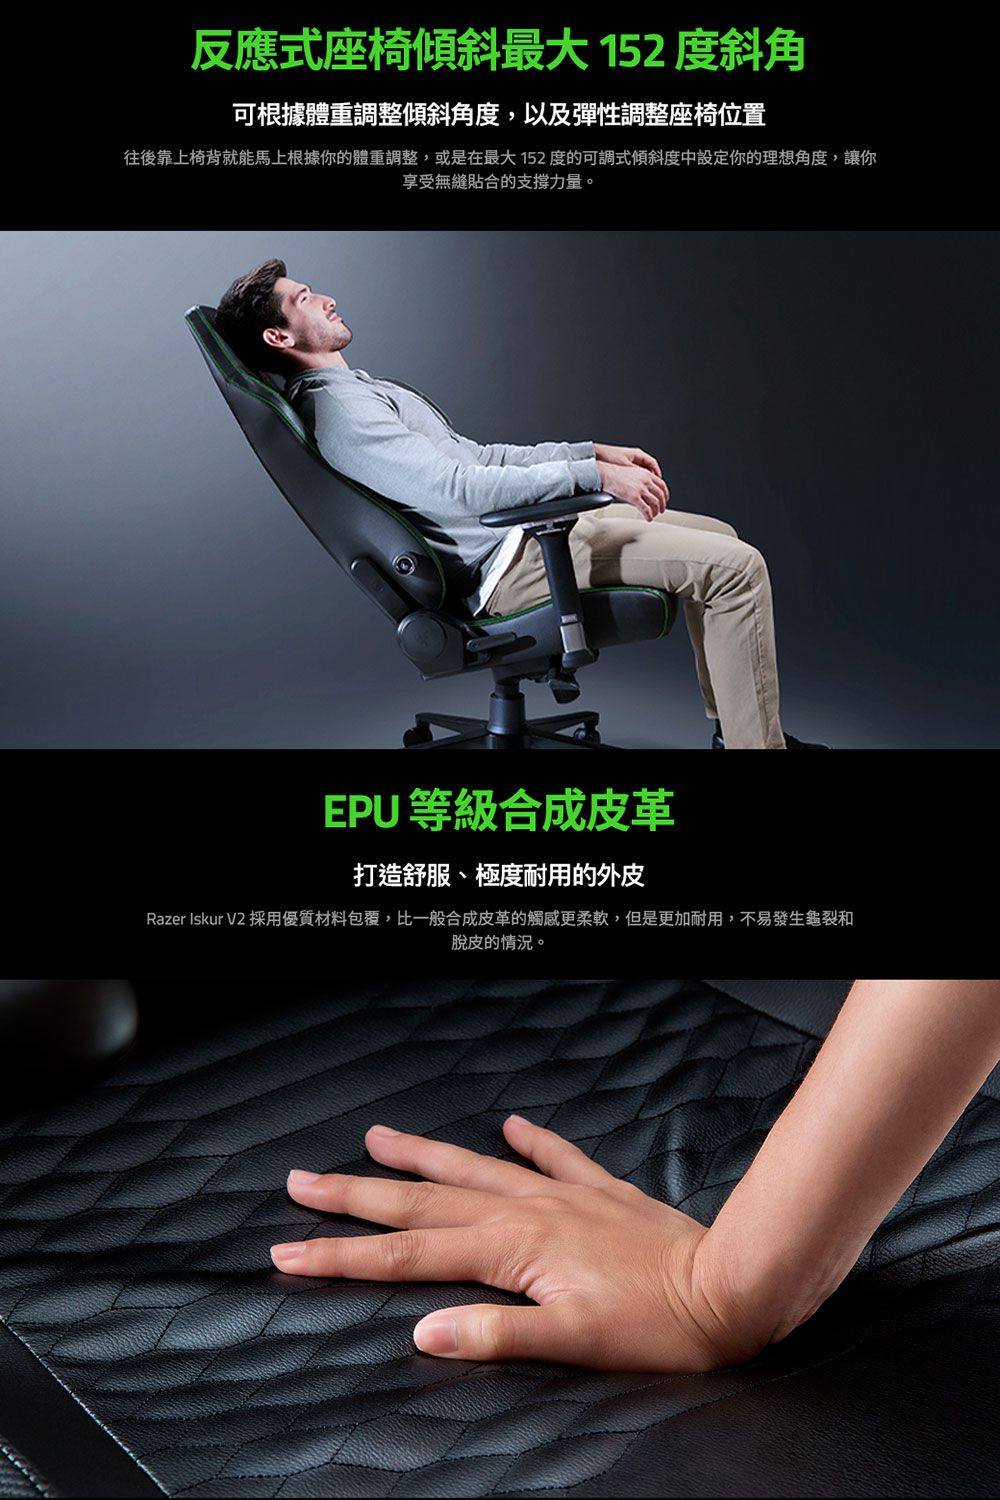 反應式座椅傾斜最大152度斜角可根據體重調整傾斜角度,以及彈性調整座椅位置往後靠椅背就能馬上根據你的體重調整,或是在最大152度的可調式傾斜度中設定你的理想角度,讓你享受無縫貼合的支撐力量。EPU 等級合成皮革打造舒服、極度耐用的外皮Razer Iskur V2 採用優質材料包覆,比一般合成皮革的觸感更柔軟,但是更加耐用,不易發生龜裂和脫皮的情況。